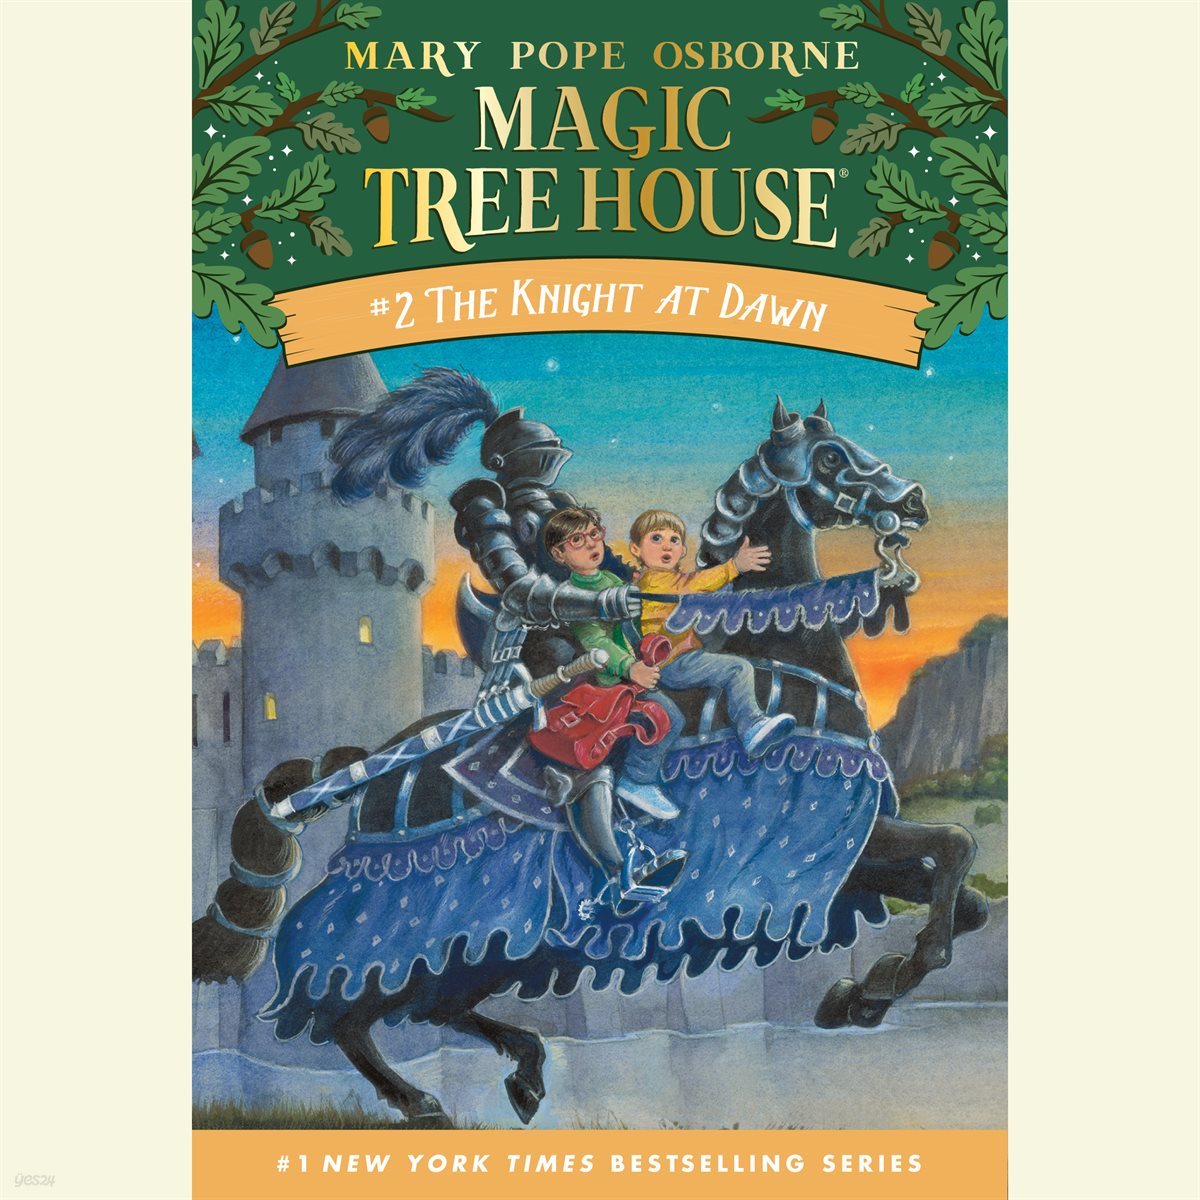 The Knight at Dawn 중세의 기사 (Magic Tree House 매직트리하우스)